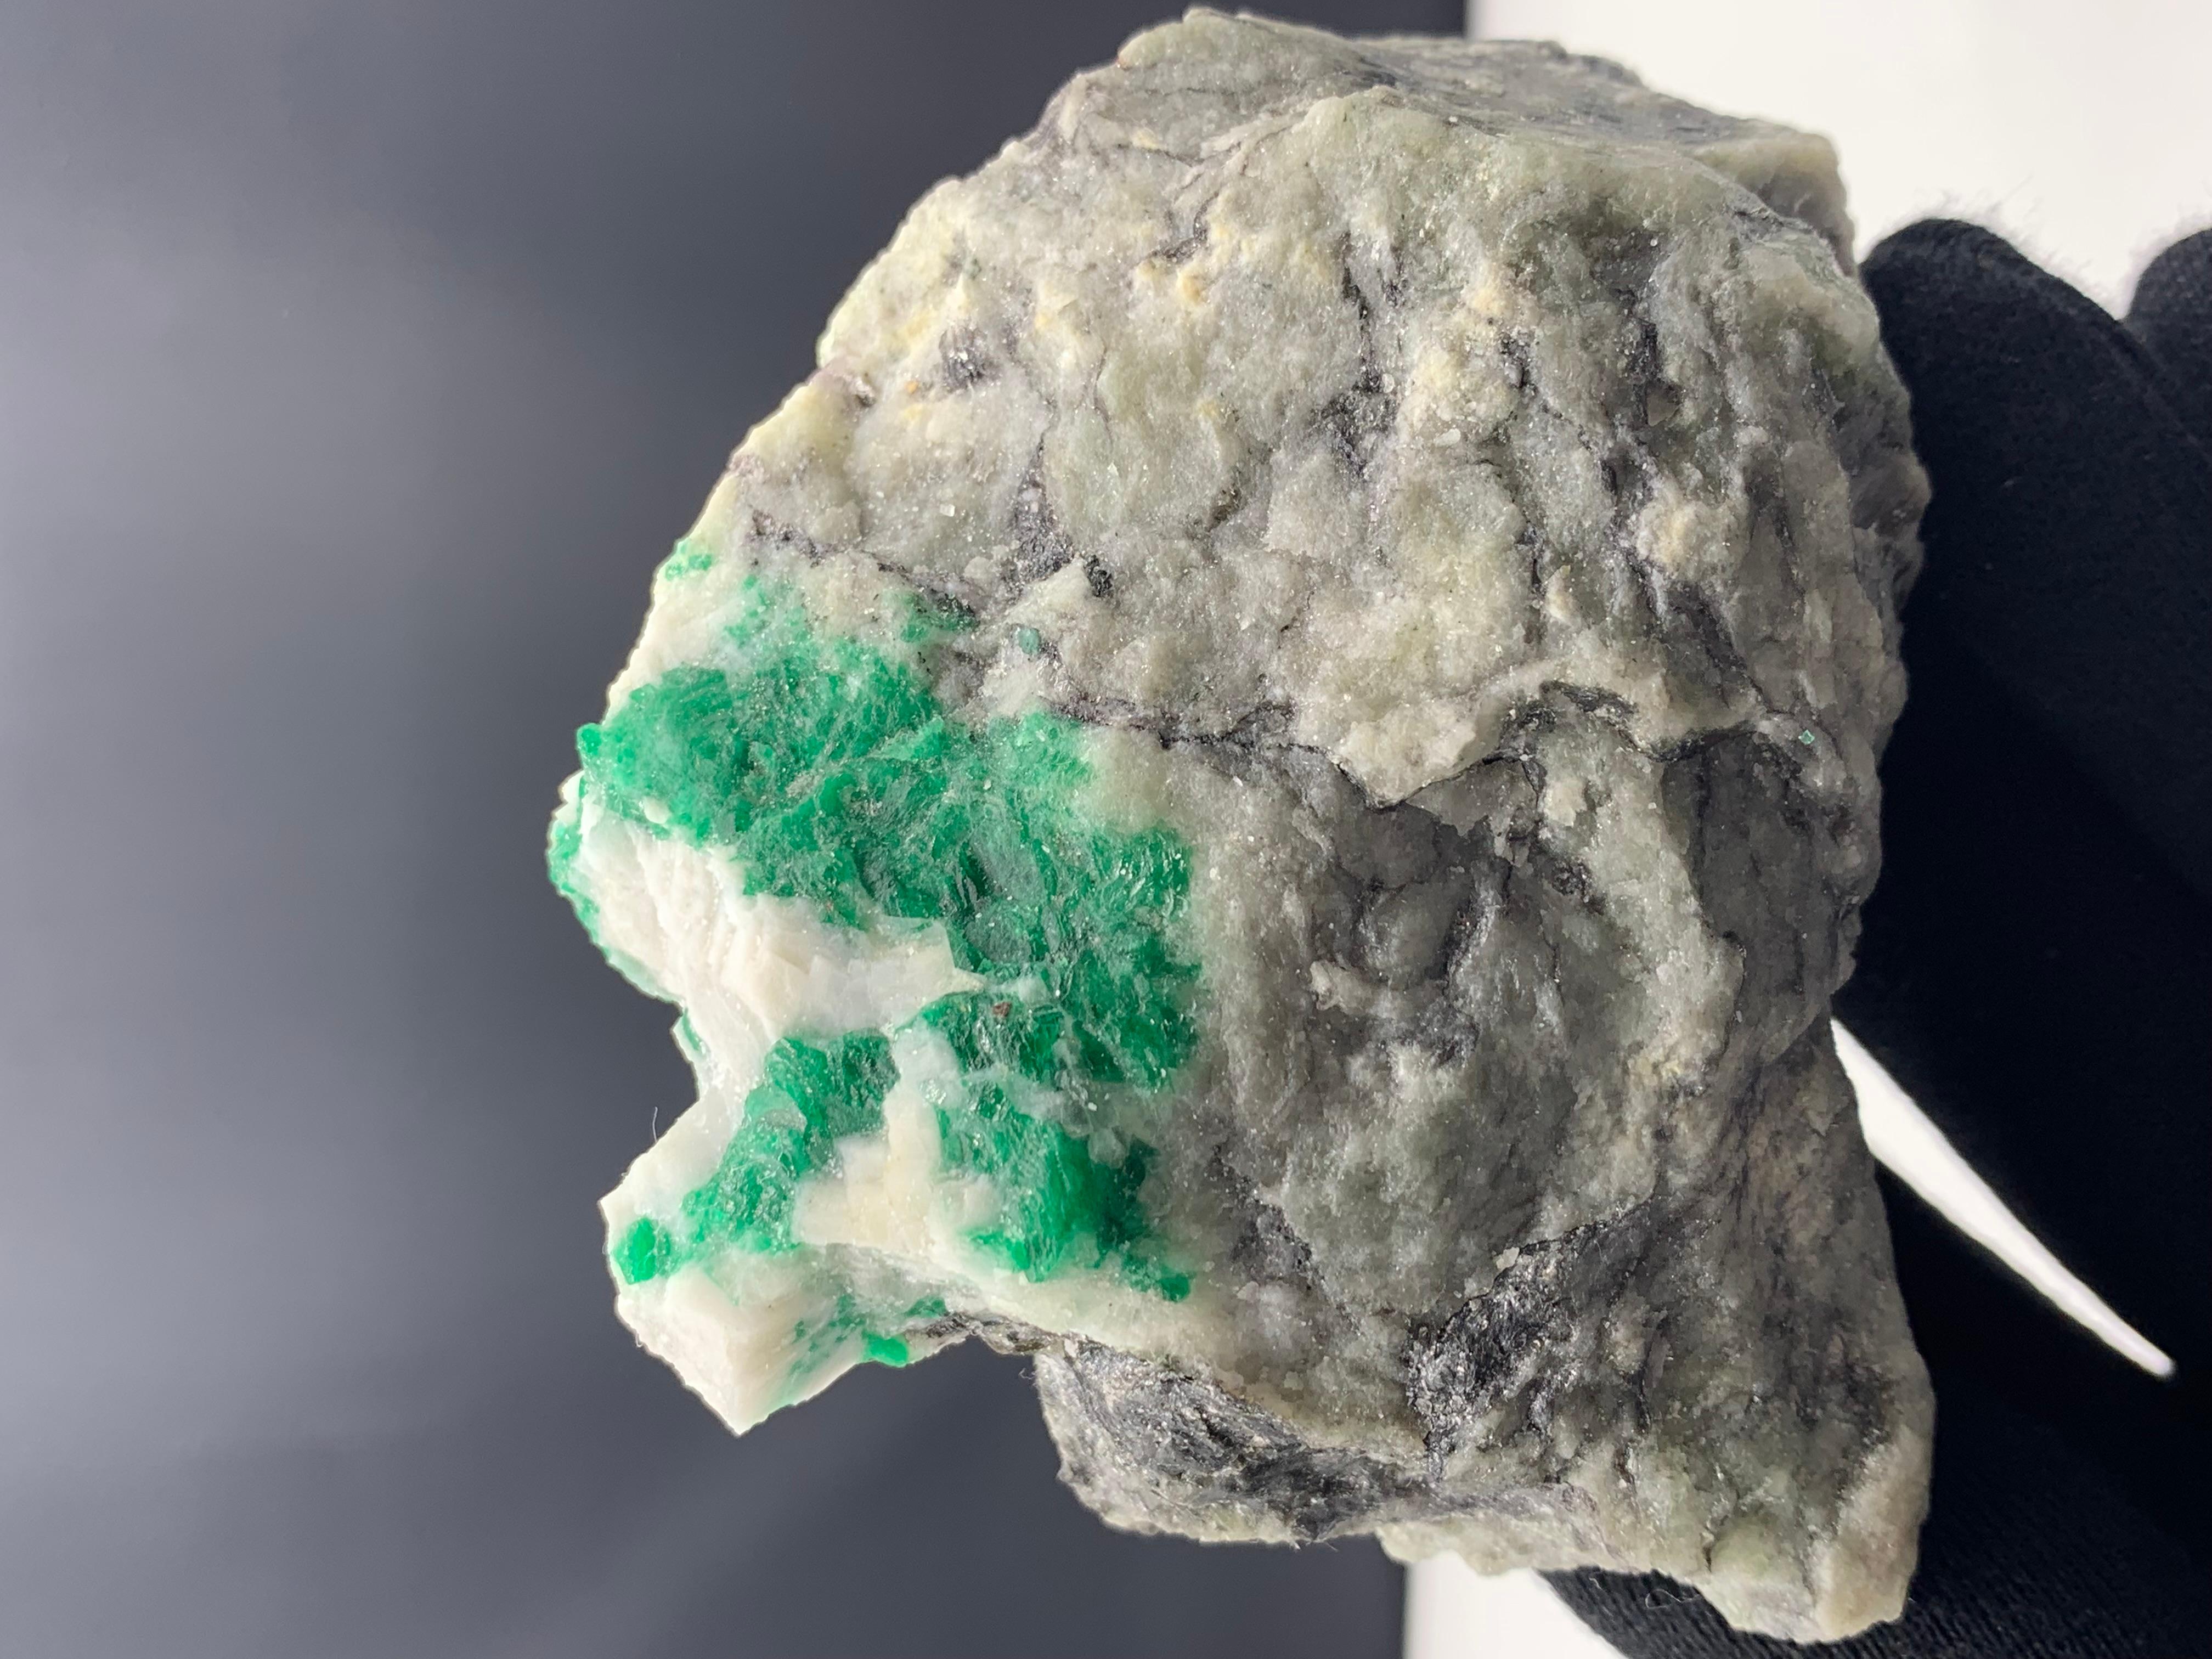 346,56 Gramm Schönes Smaragd-Exemplar aus Swat Valley, Pakistan 

Gewicht: 346,56 Gramm
Abmessung: 8.6 x 8.5 x 3.7 Cm
Herkunft: Swat-Tal, Pakistan 

Smaragd hat die chemische Zusammensetzung Be3Al2(SiO3)6 und wird als Cyclosilikat eingestuft. Es hat